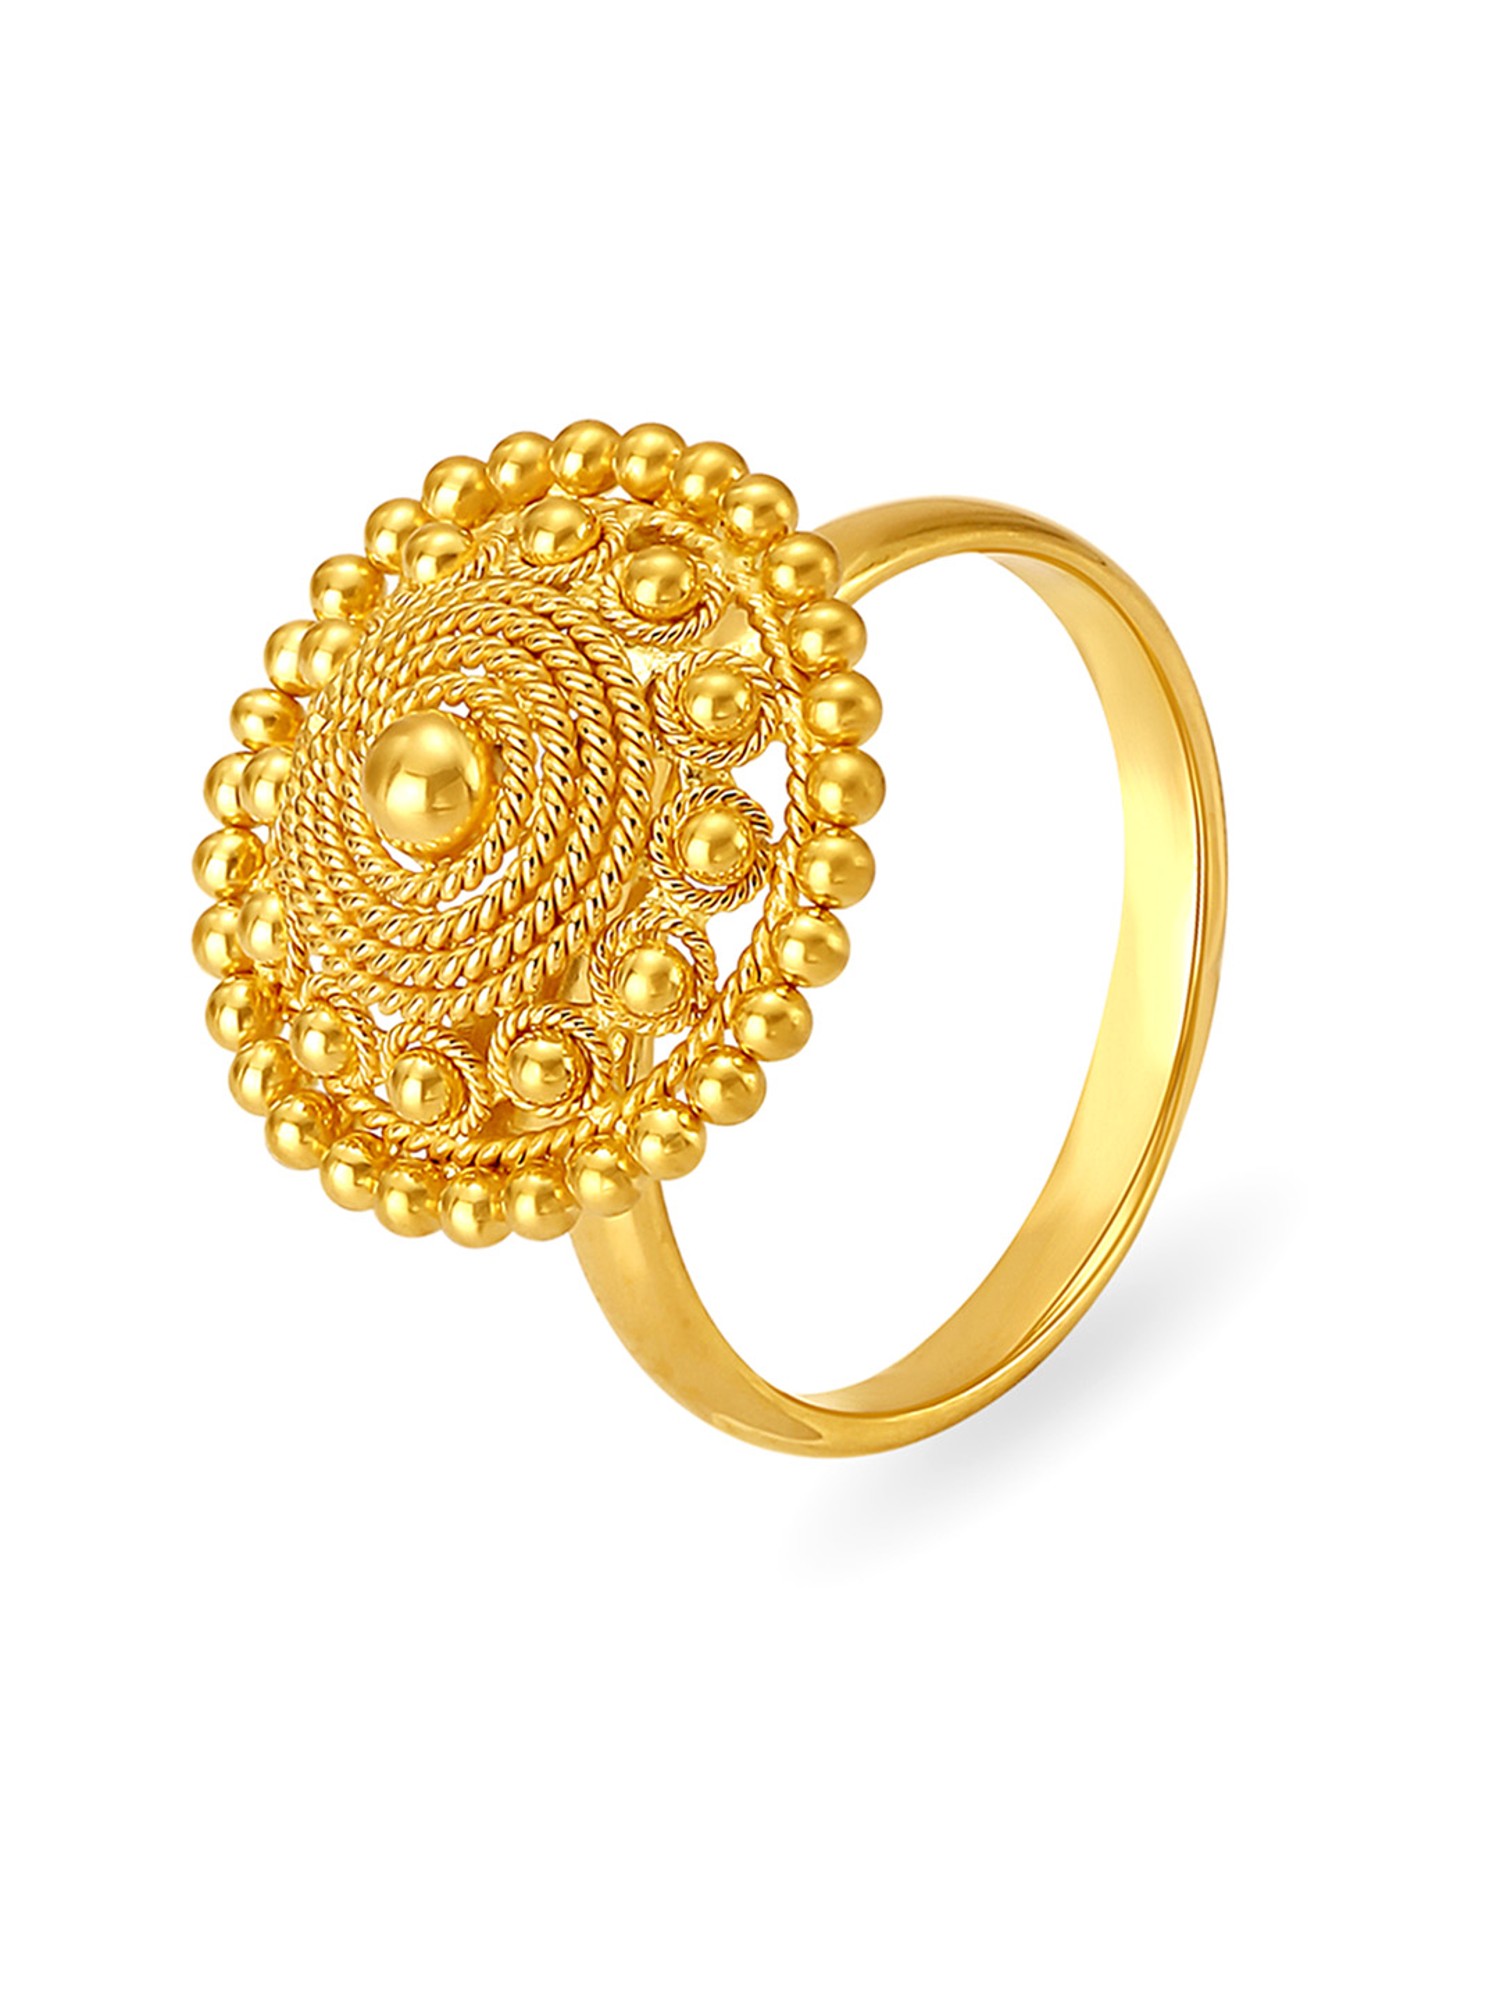 Resplendent 18 Karat Yellow Gold And Diamond Finger Ring